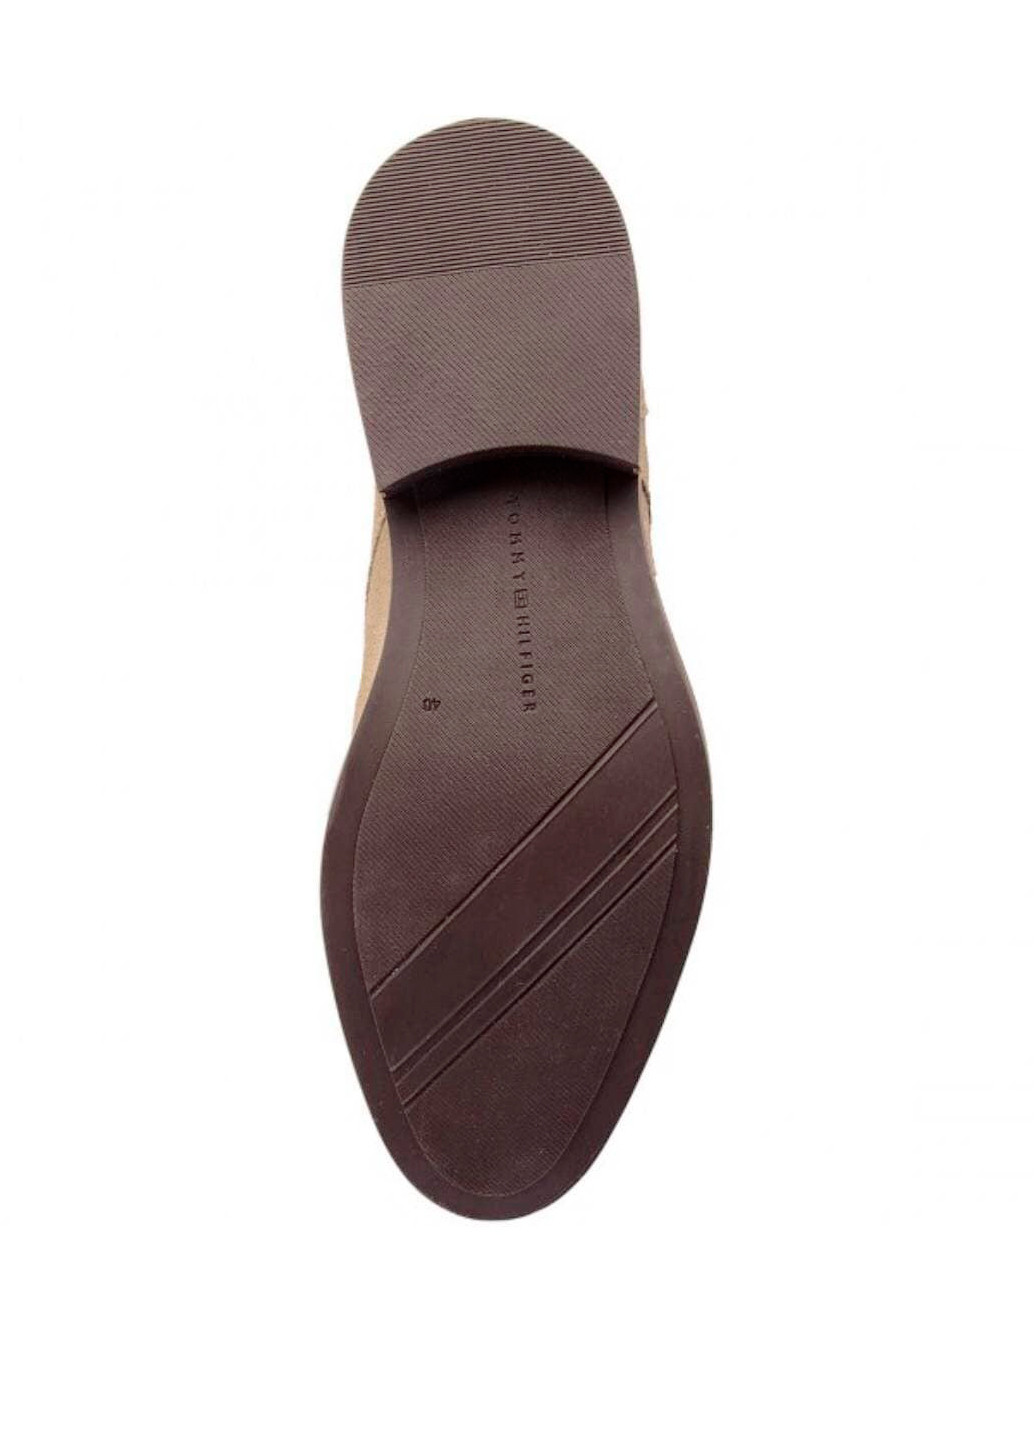 Песочные классические замшевые туфли Tommy Hilfiger на шнурках